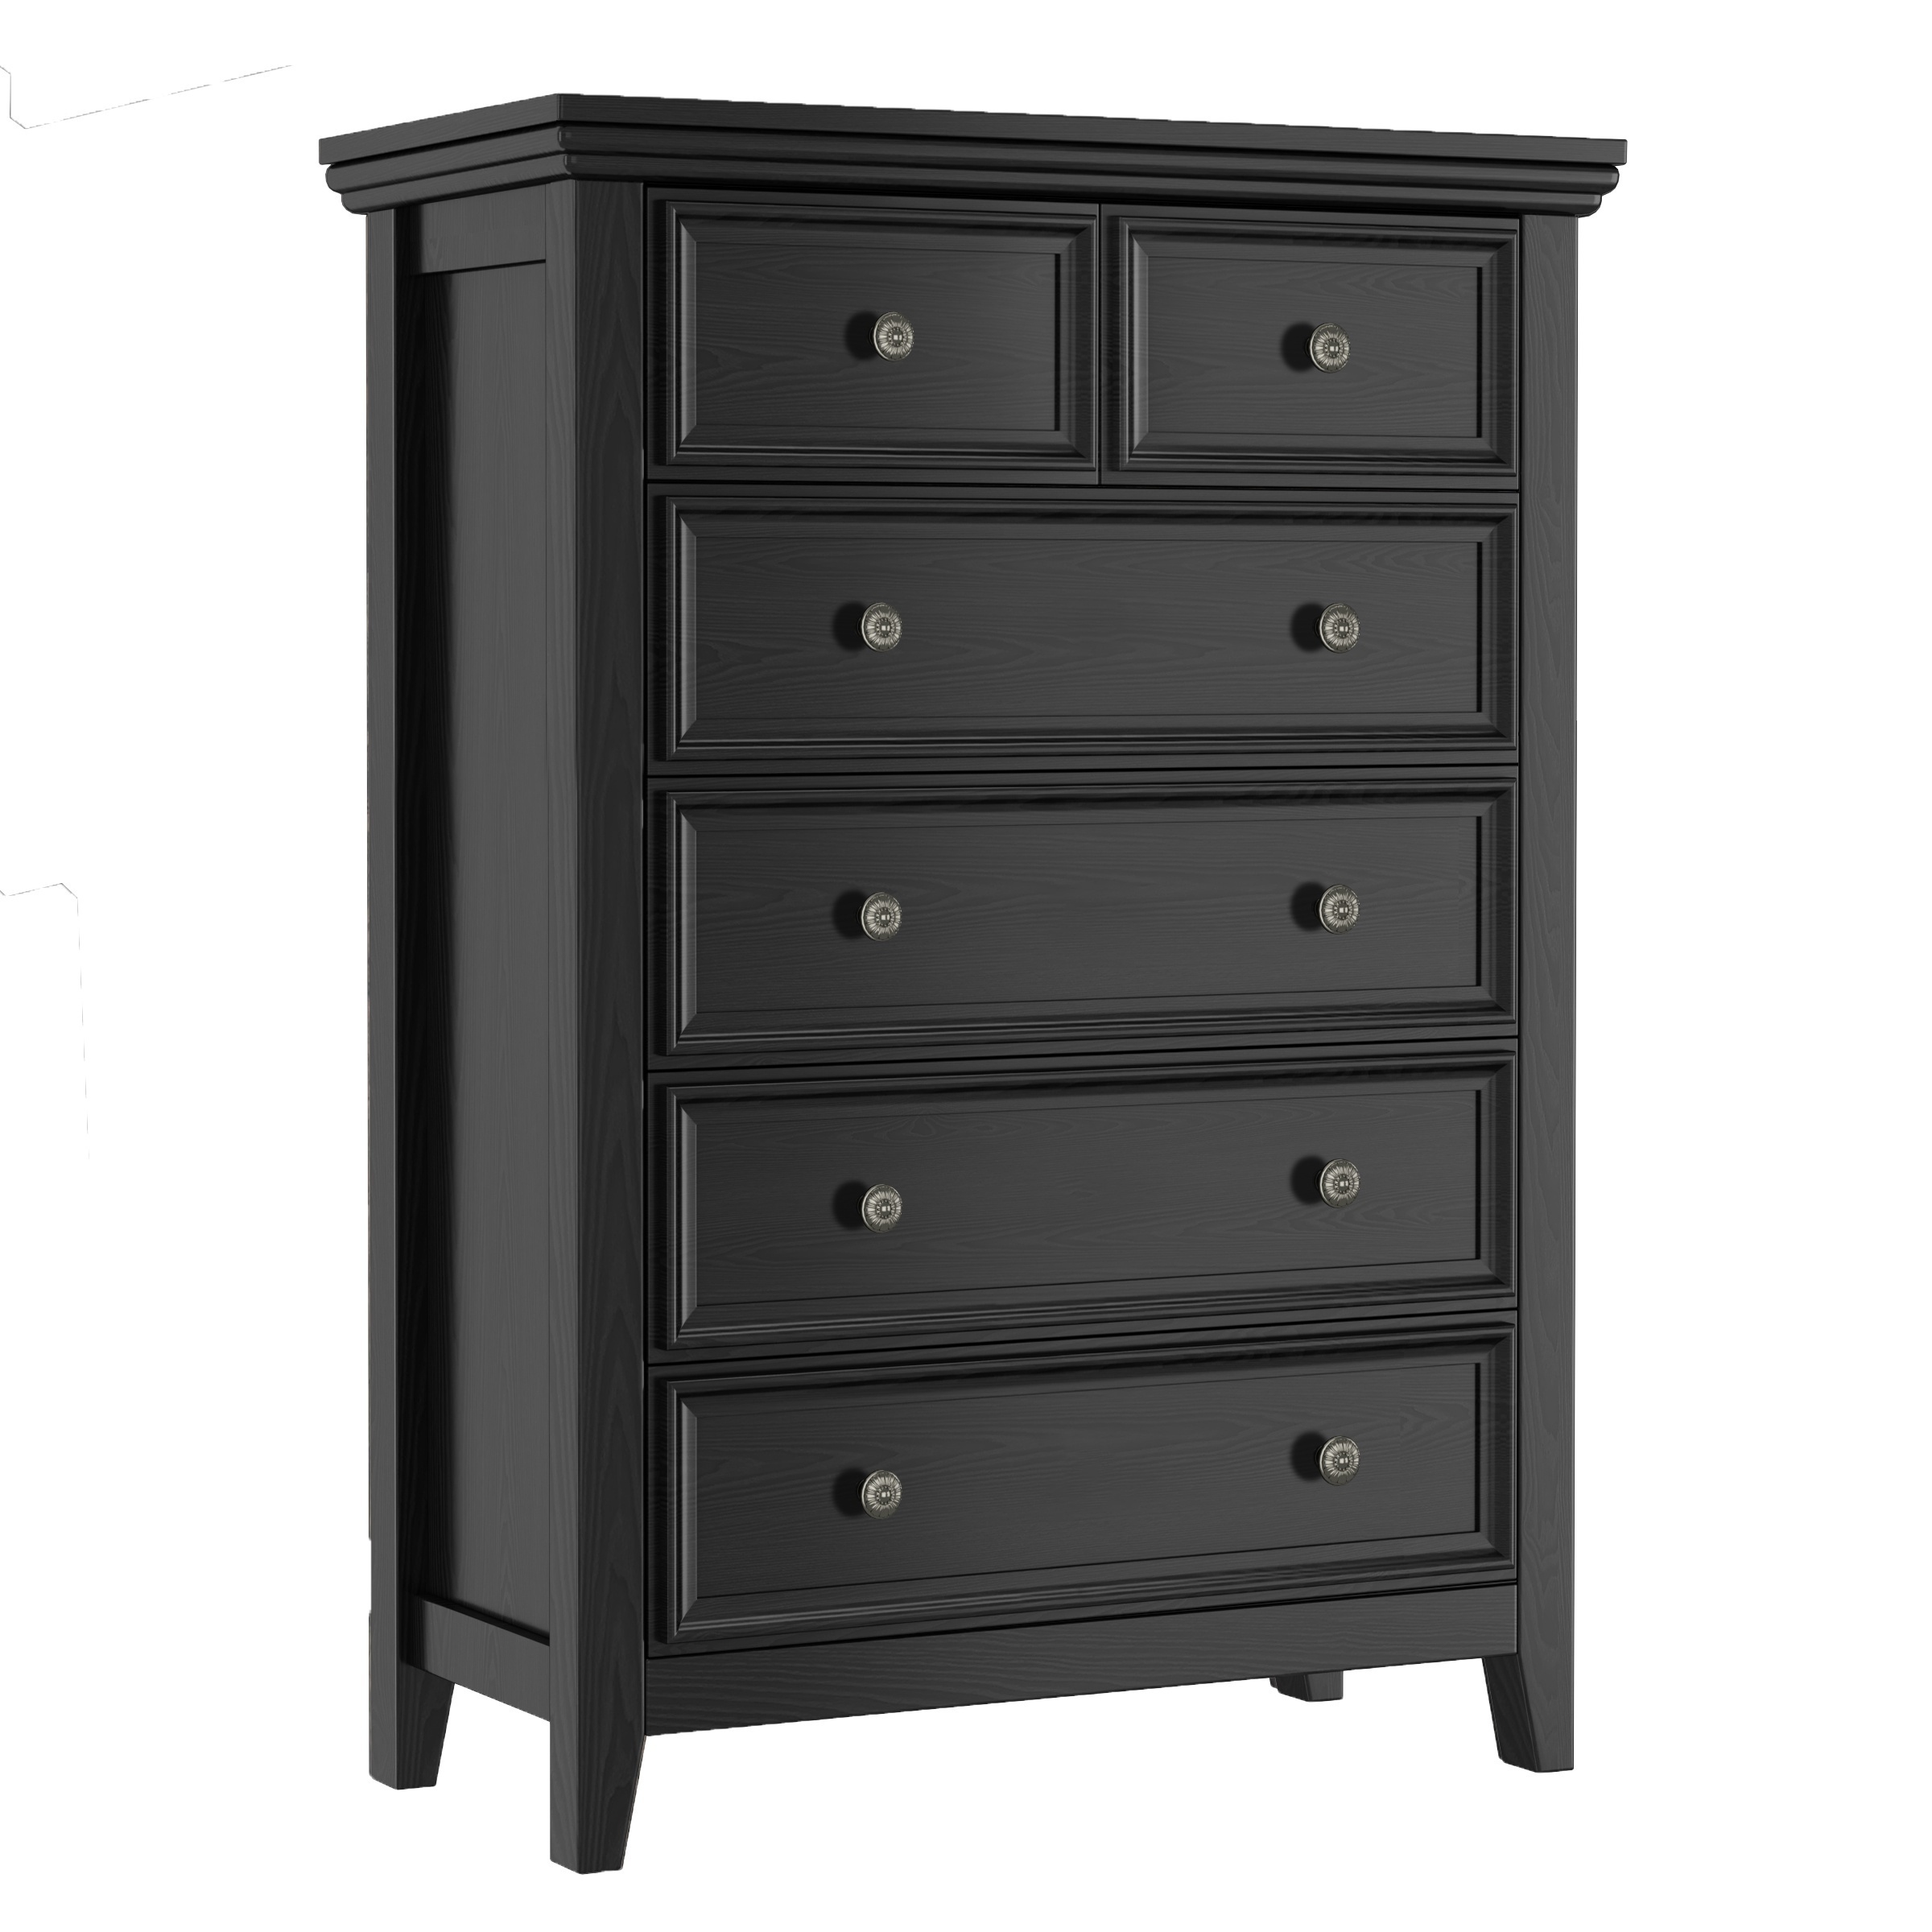 

Black Dresser, Dresser For Bedroom, Black 6 Drawers Dresser, 6 Chest Of Drawer, Tall Nightstand, Modern Drawer Dresser Cabinet For Bedroom